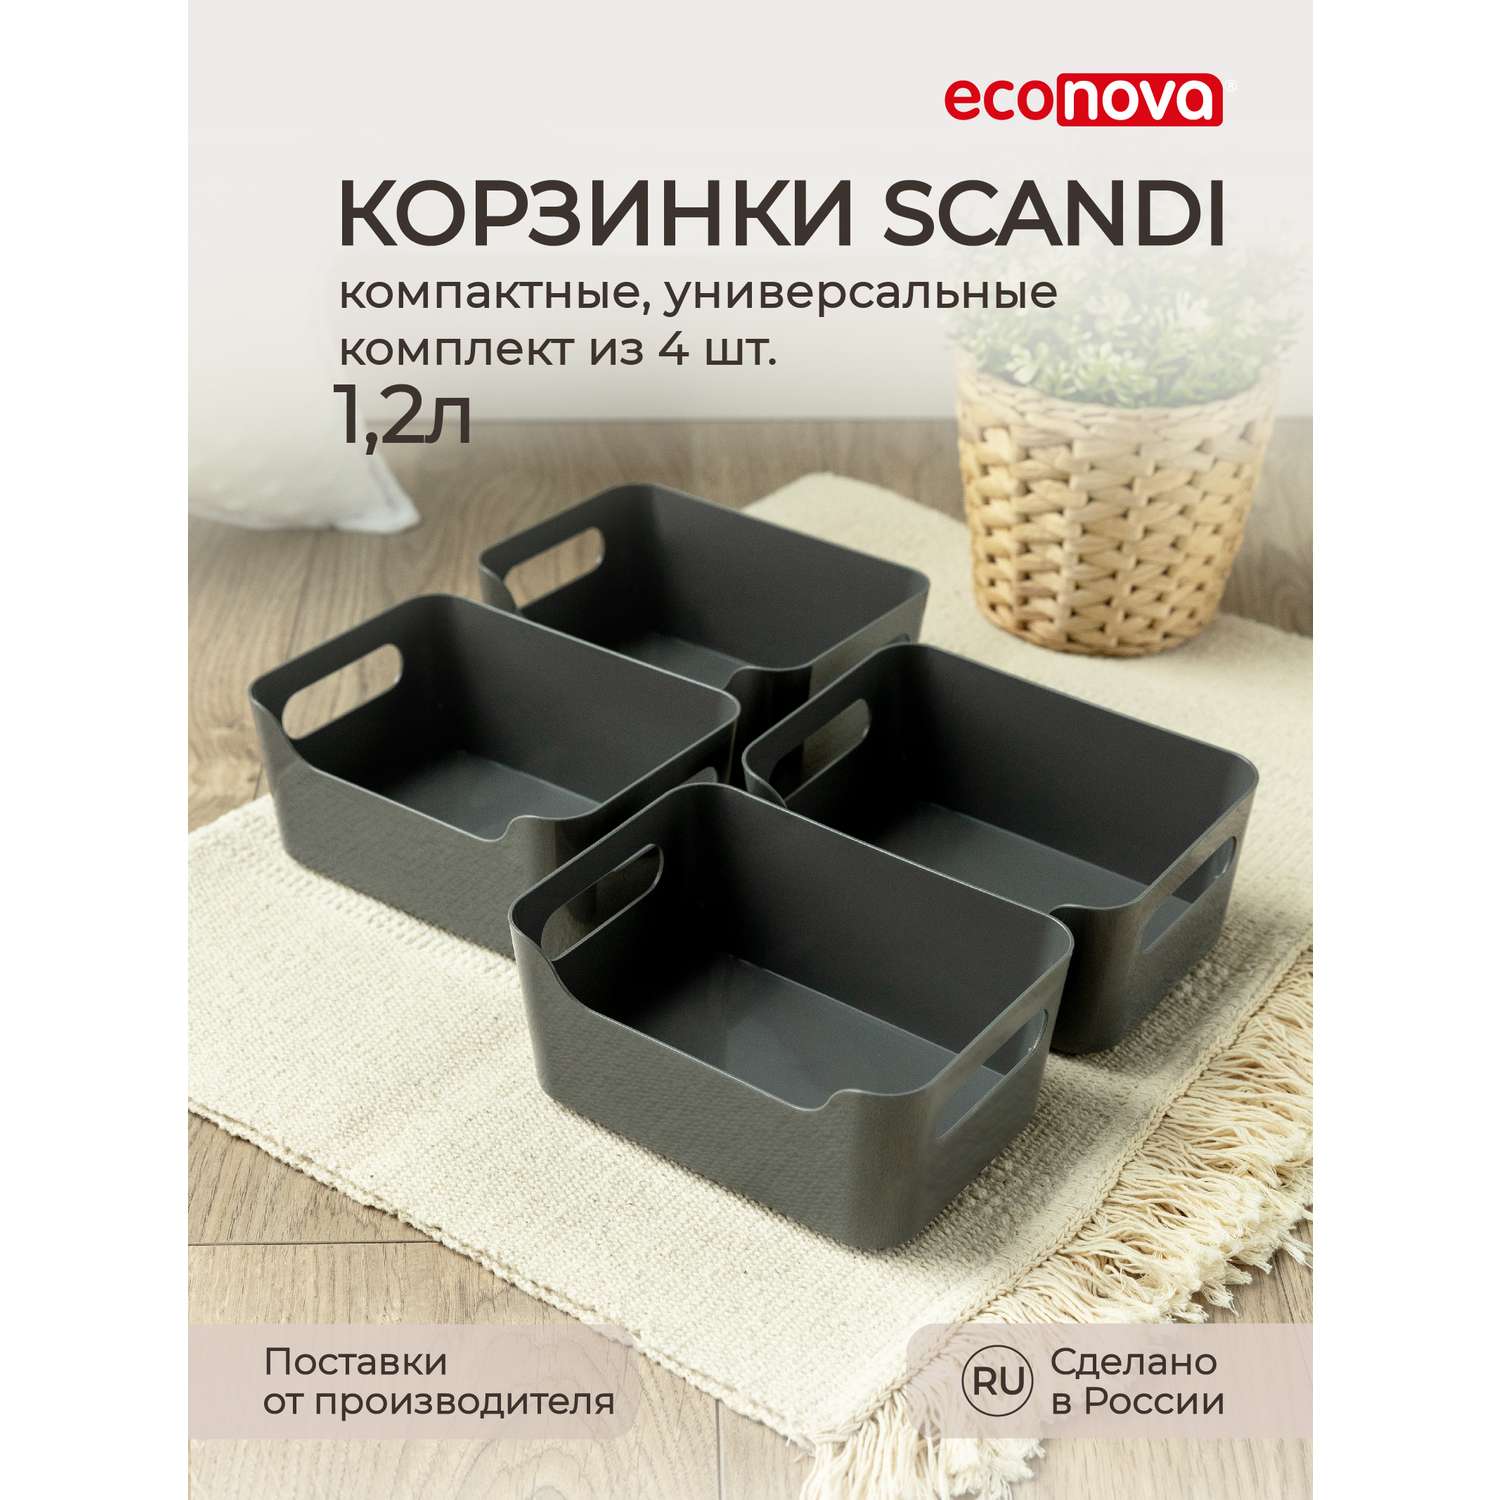 Комплект корзинок Econova универсальных Scandi 170x120x75 мм 1.2л 4шт серый - фото 1